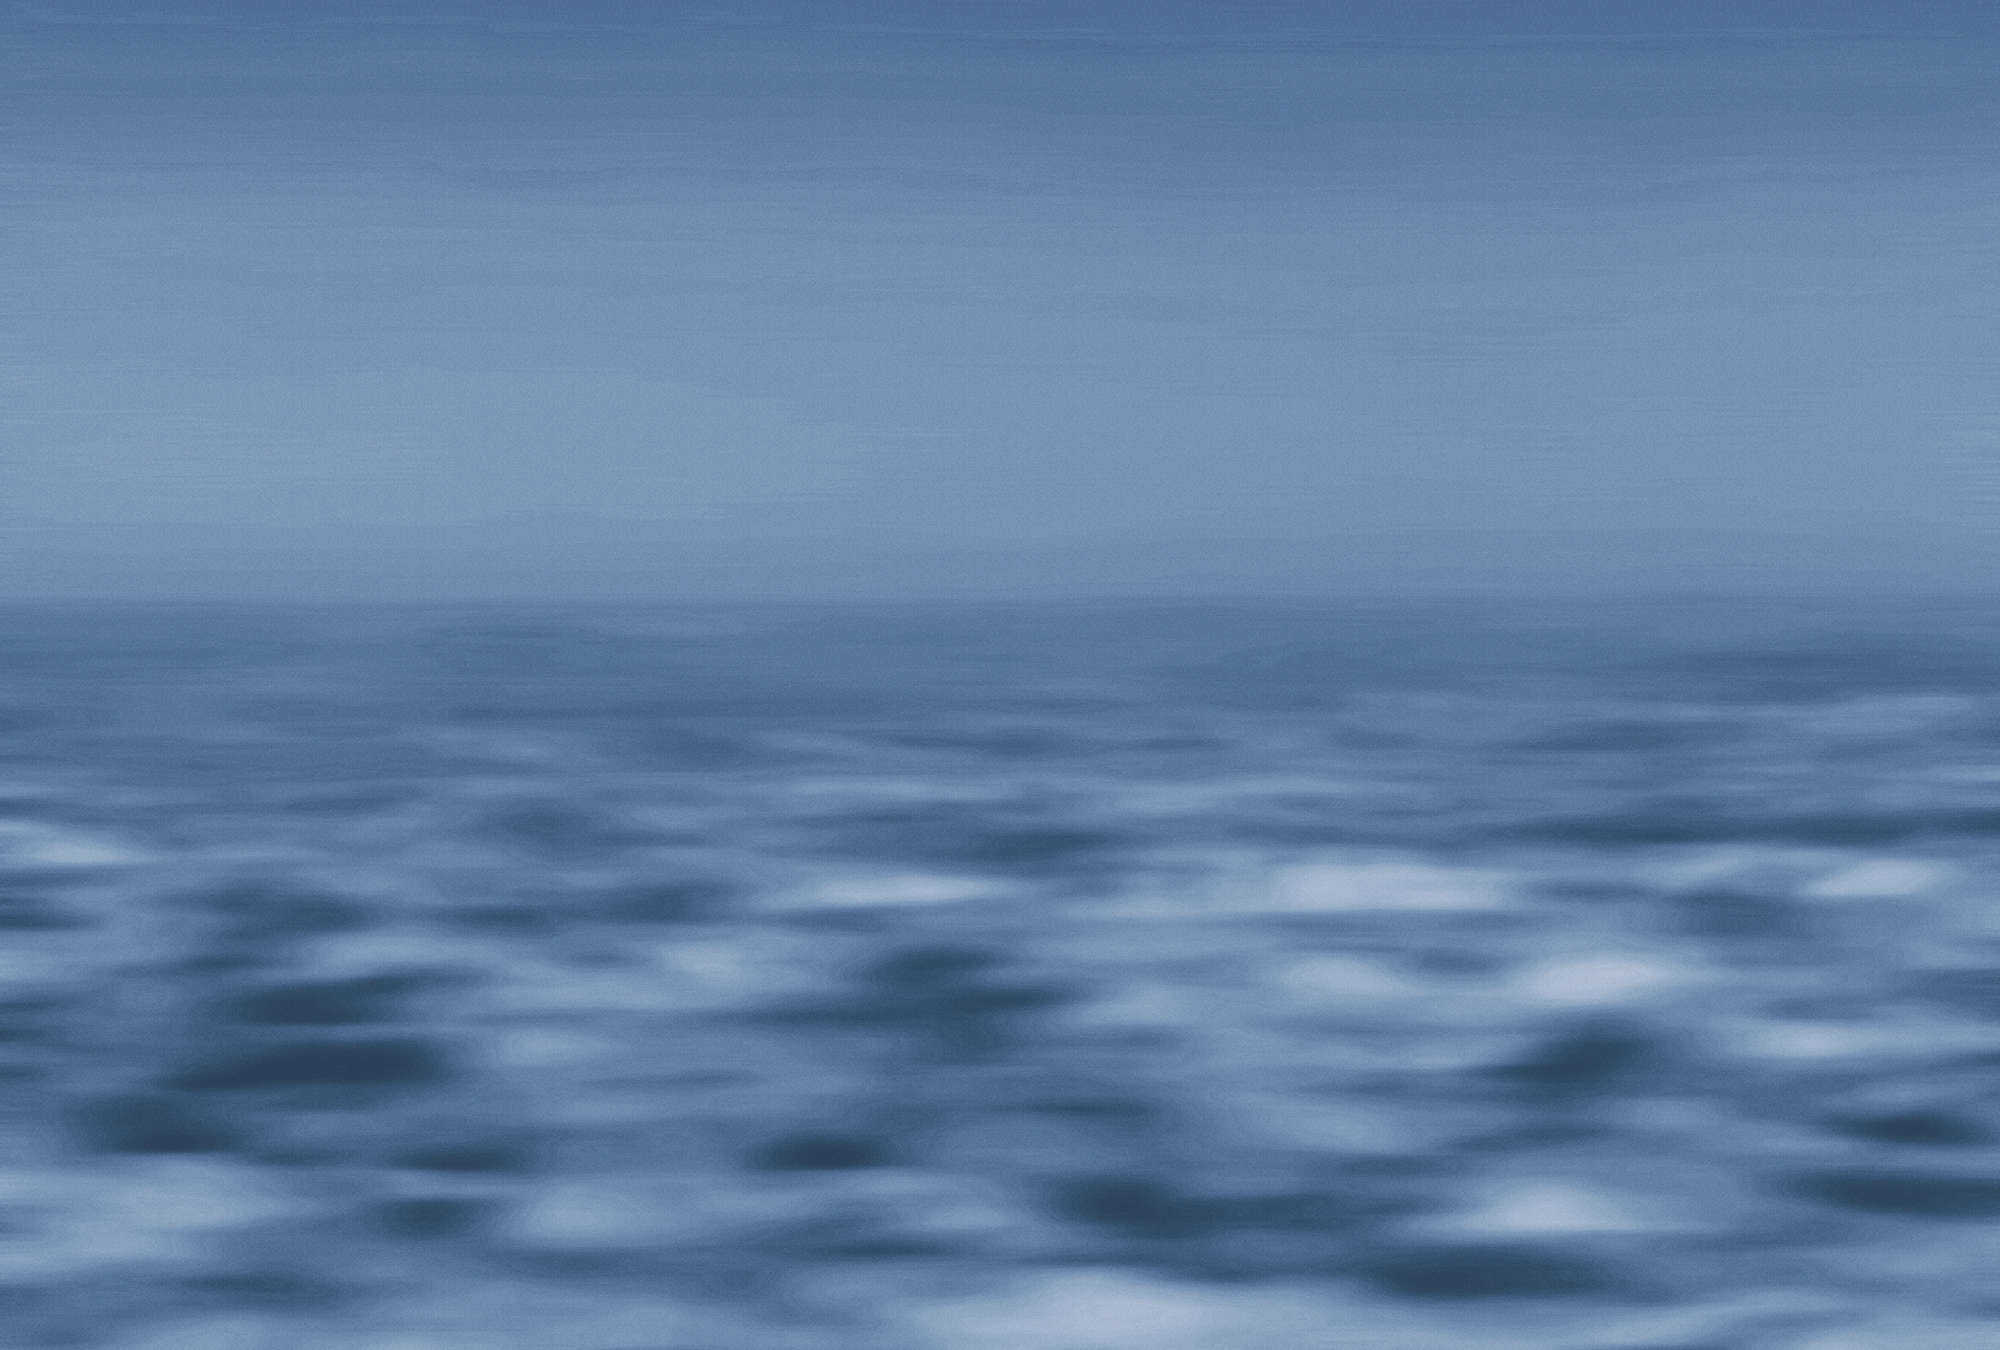             Maritiem behang zee, abstracte waterwereld - blauw, wit
        